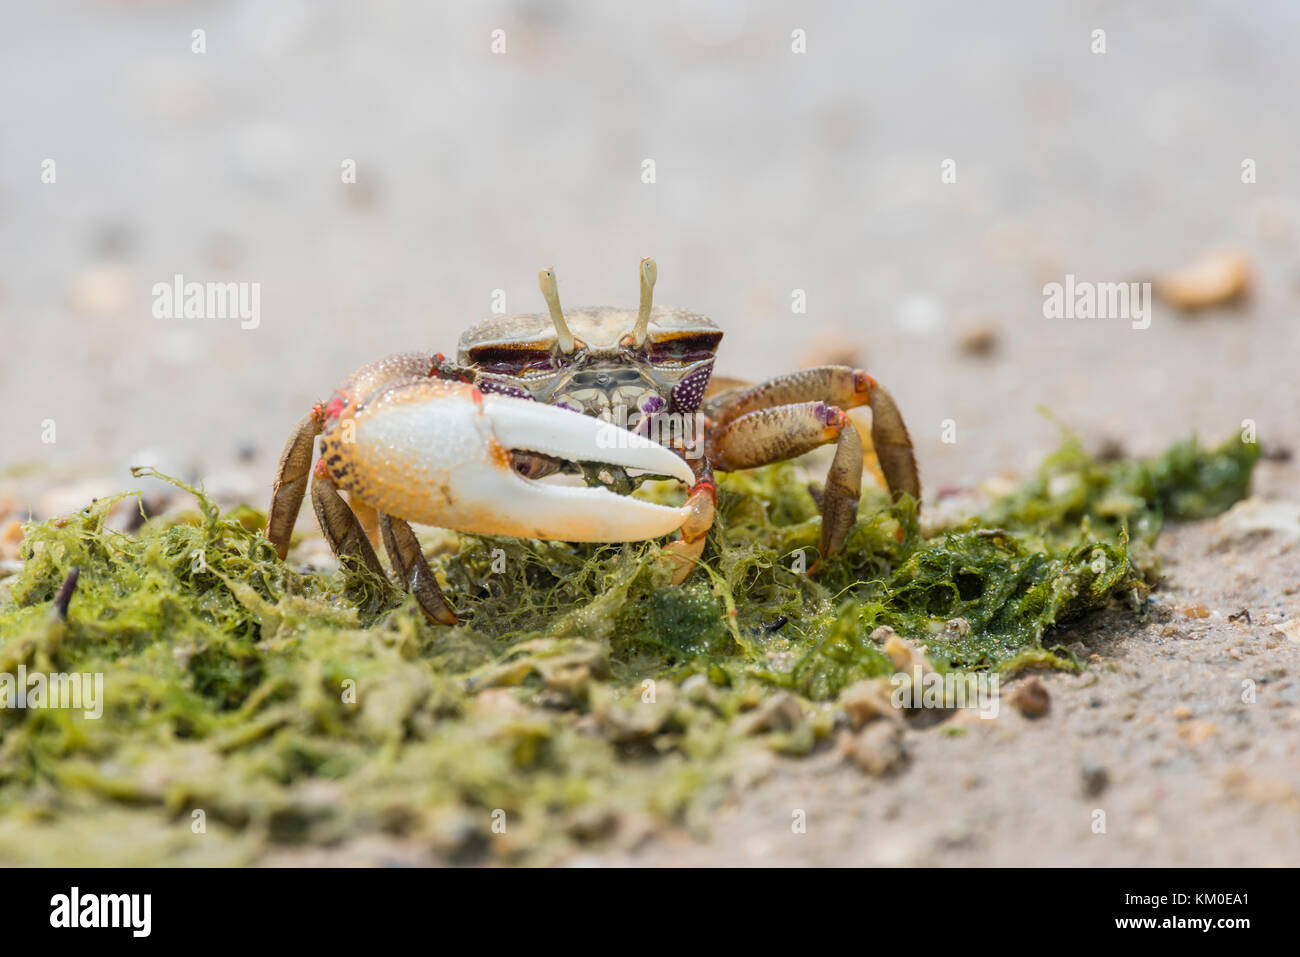 Europaeische Maennliche Winkerkrabbe, Uca tangeri, maschio europeo Fiddler Crab Foto Stock